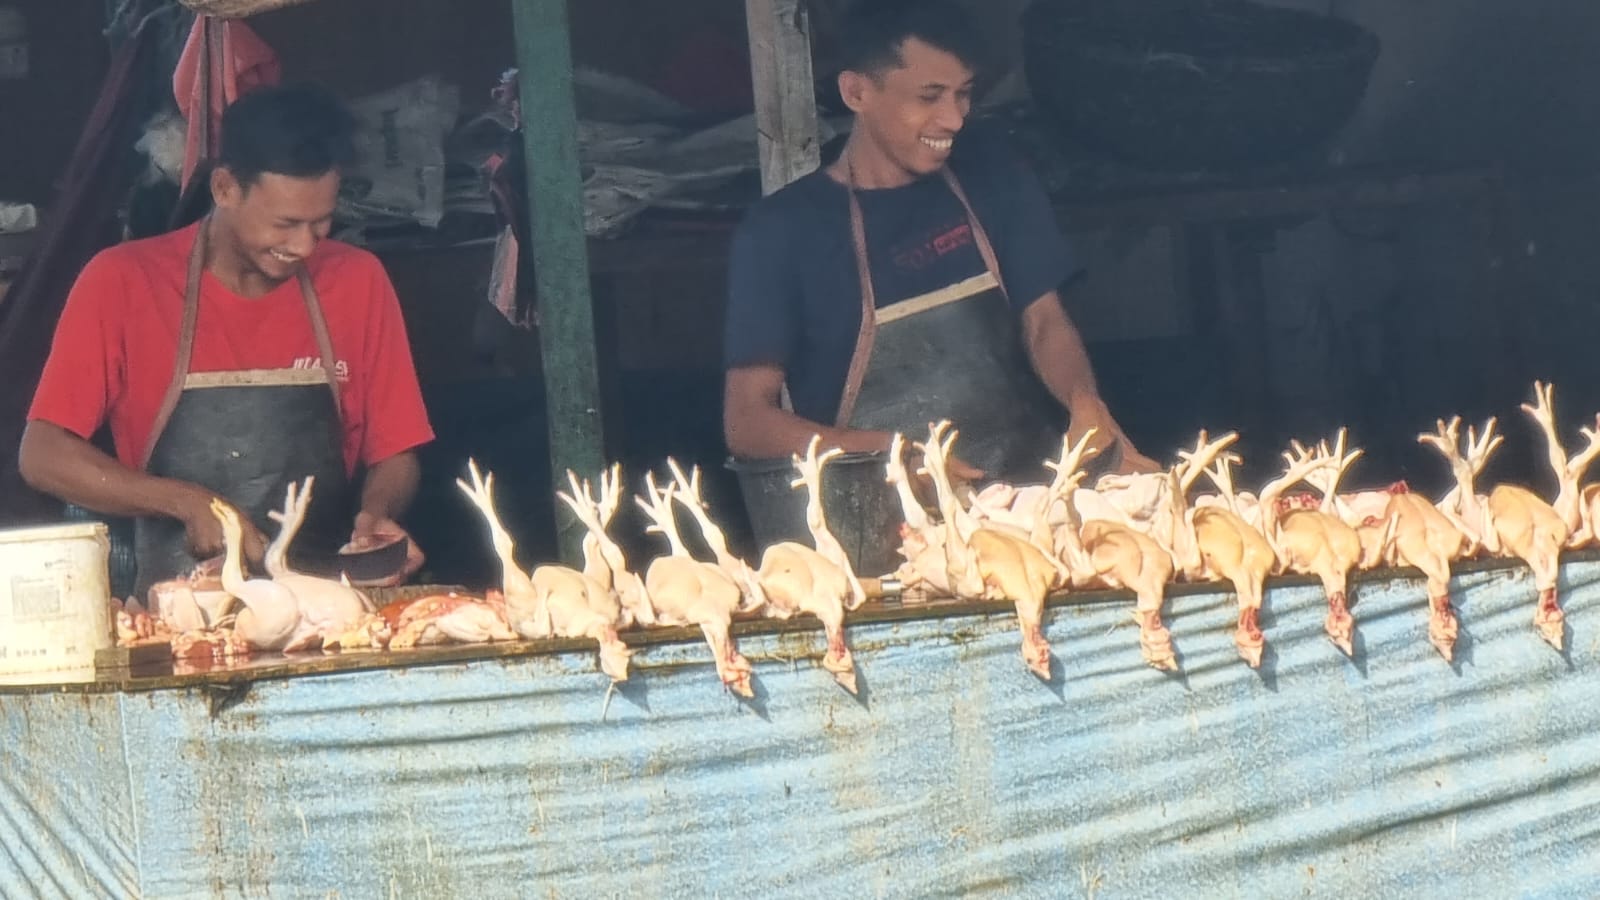 Jelang Idul Adha Harga Ayam Merangkak Naik di Banda Aceh, Satu Ekor Dikisaran Harga 70 Ribu